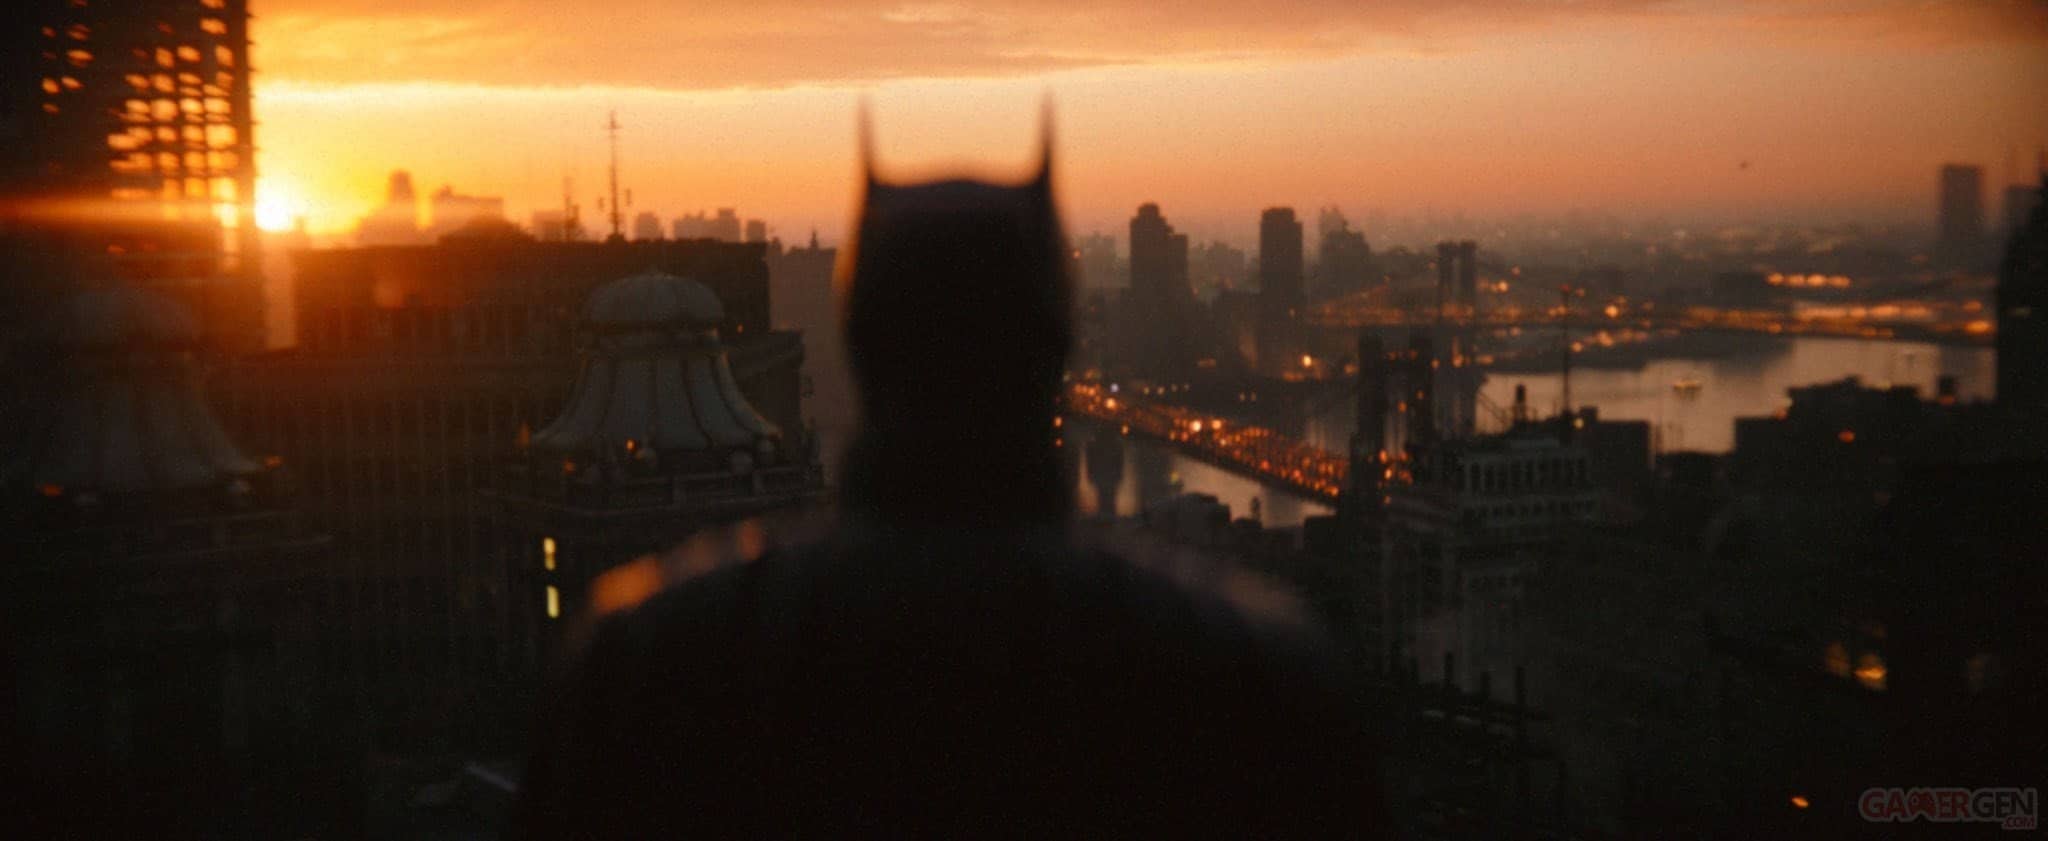 Sans surprise, The Batman 2 est officialisé par la Warner